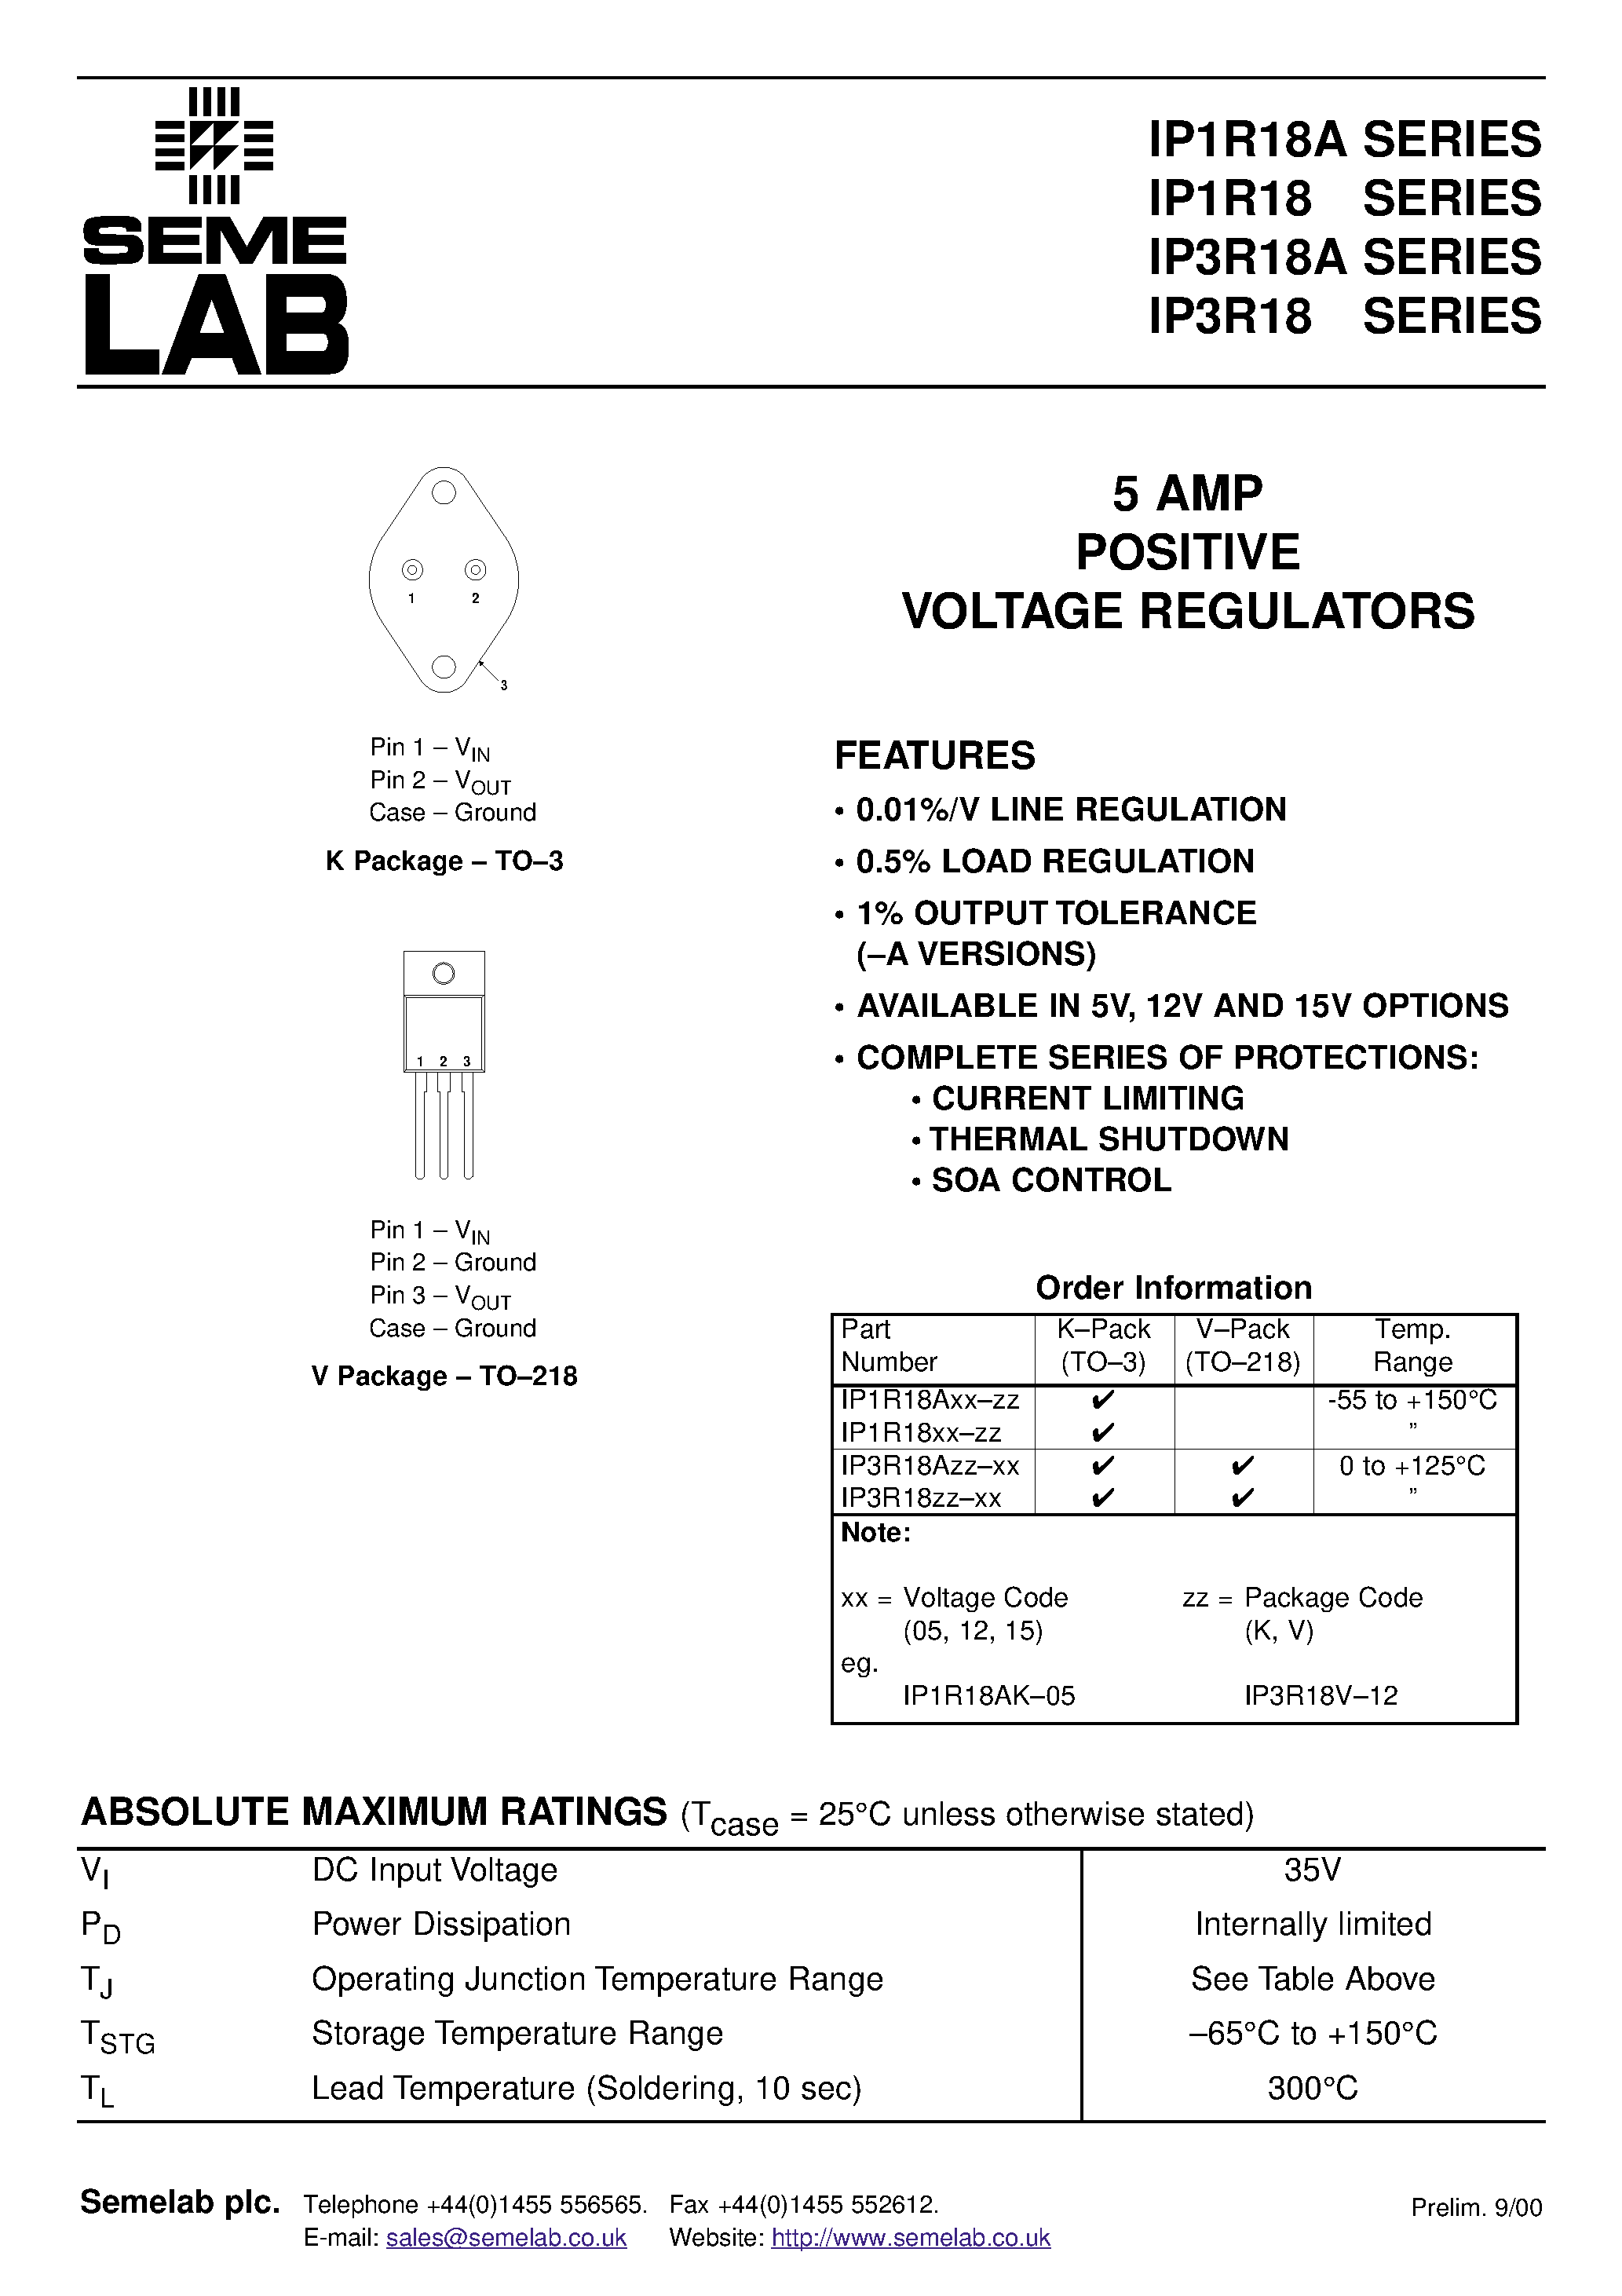 Datasheet IP1R18A15-K - 5 AMP POSITIVE VOLTAGE REGULATORS page 1